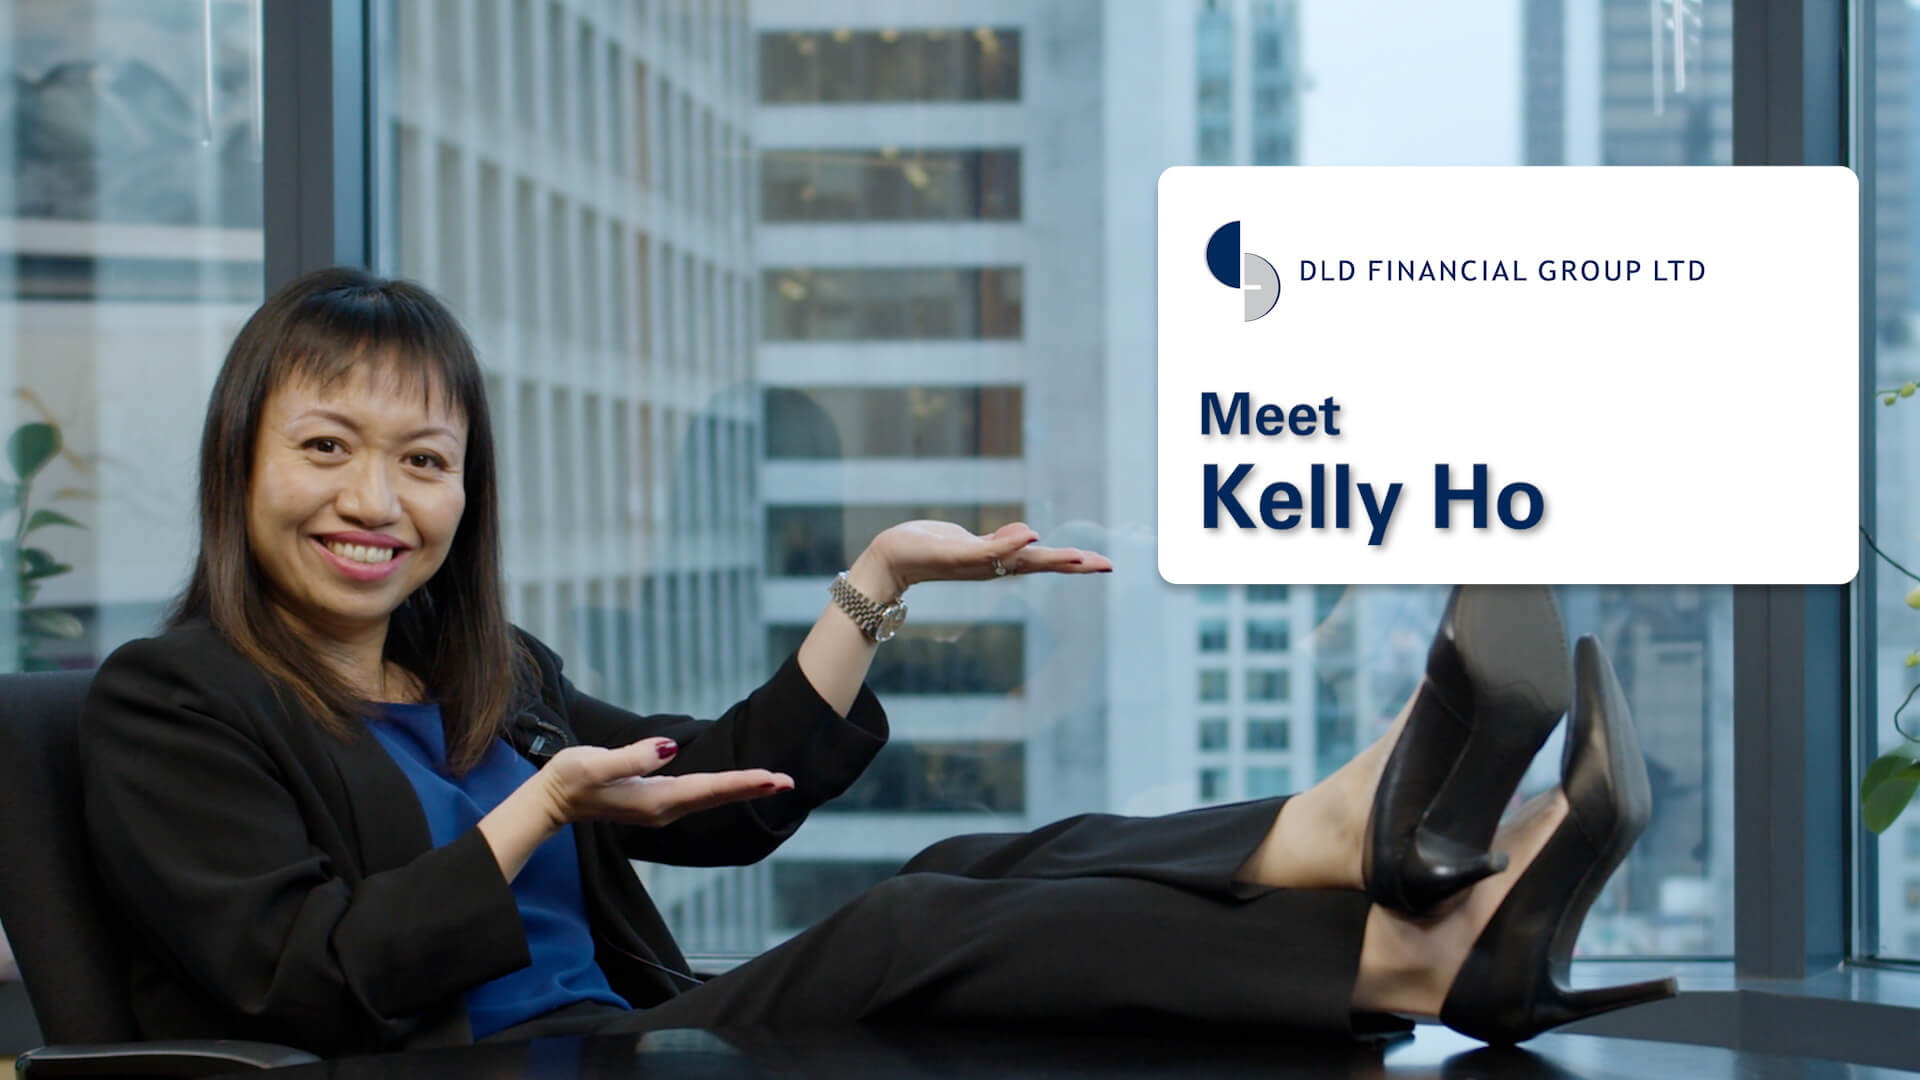 DLD Team - Meet Kelly Ho, Partner at DLD Financial